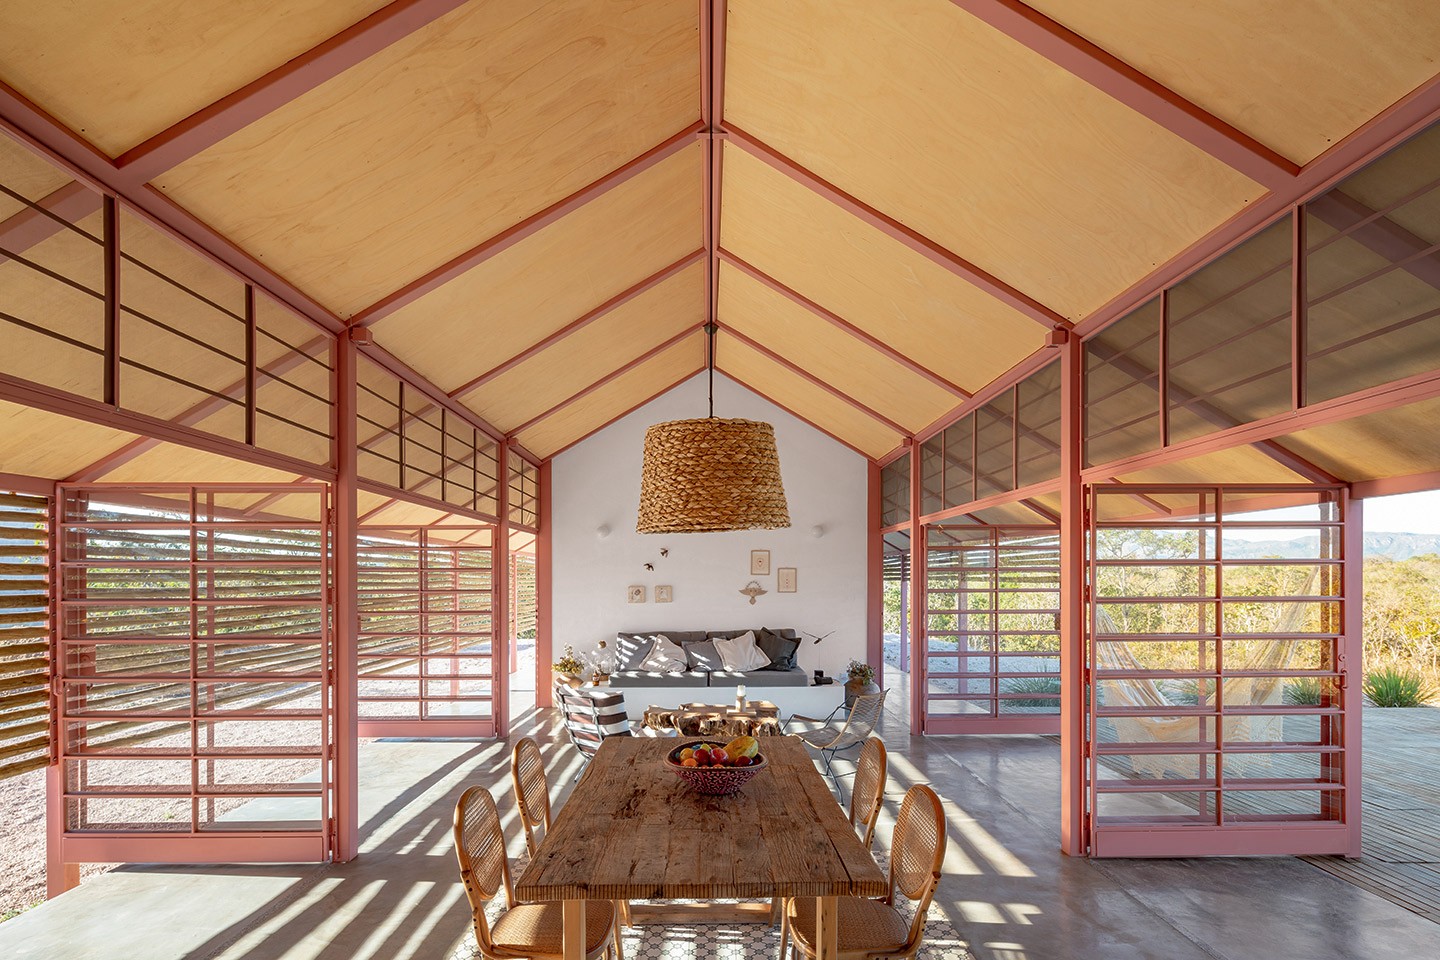 Com arquitetura vernacular, casa tem muita iluminação natural e ventilação cruzada em meio ao cerrado (Foto: Joana França/divulgação)